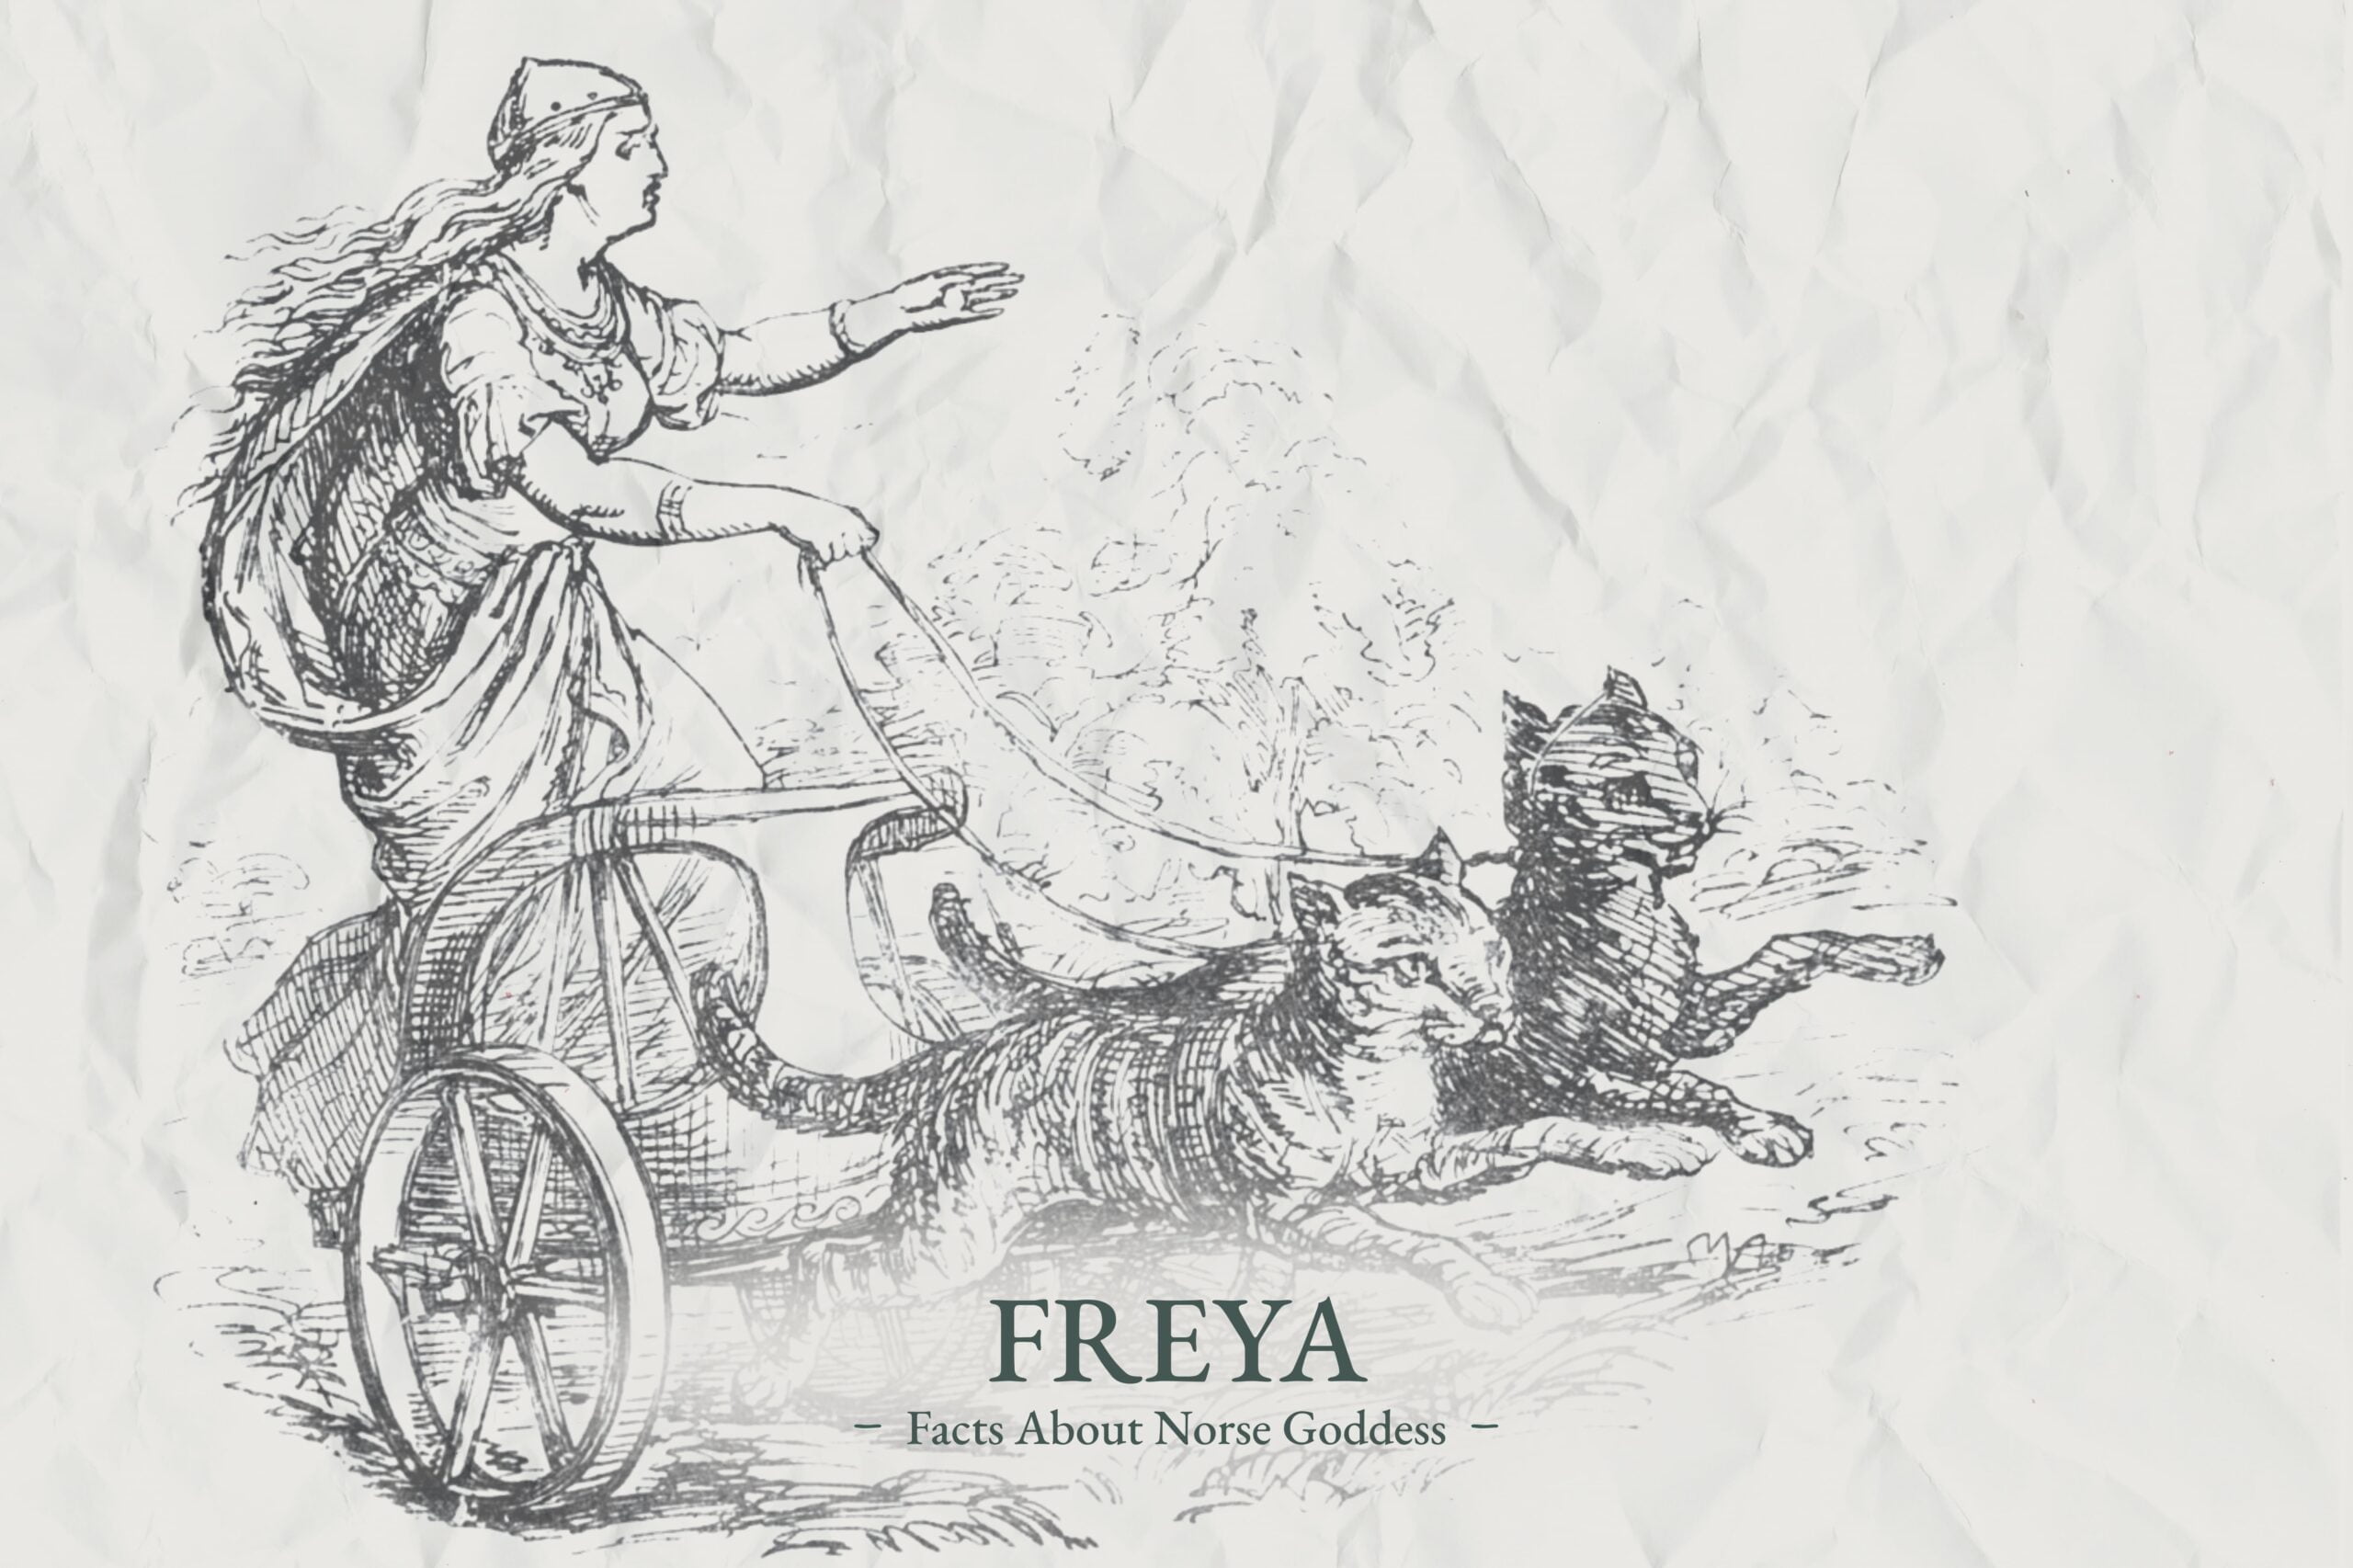 Freya Norse goddess facts